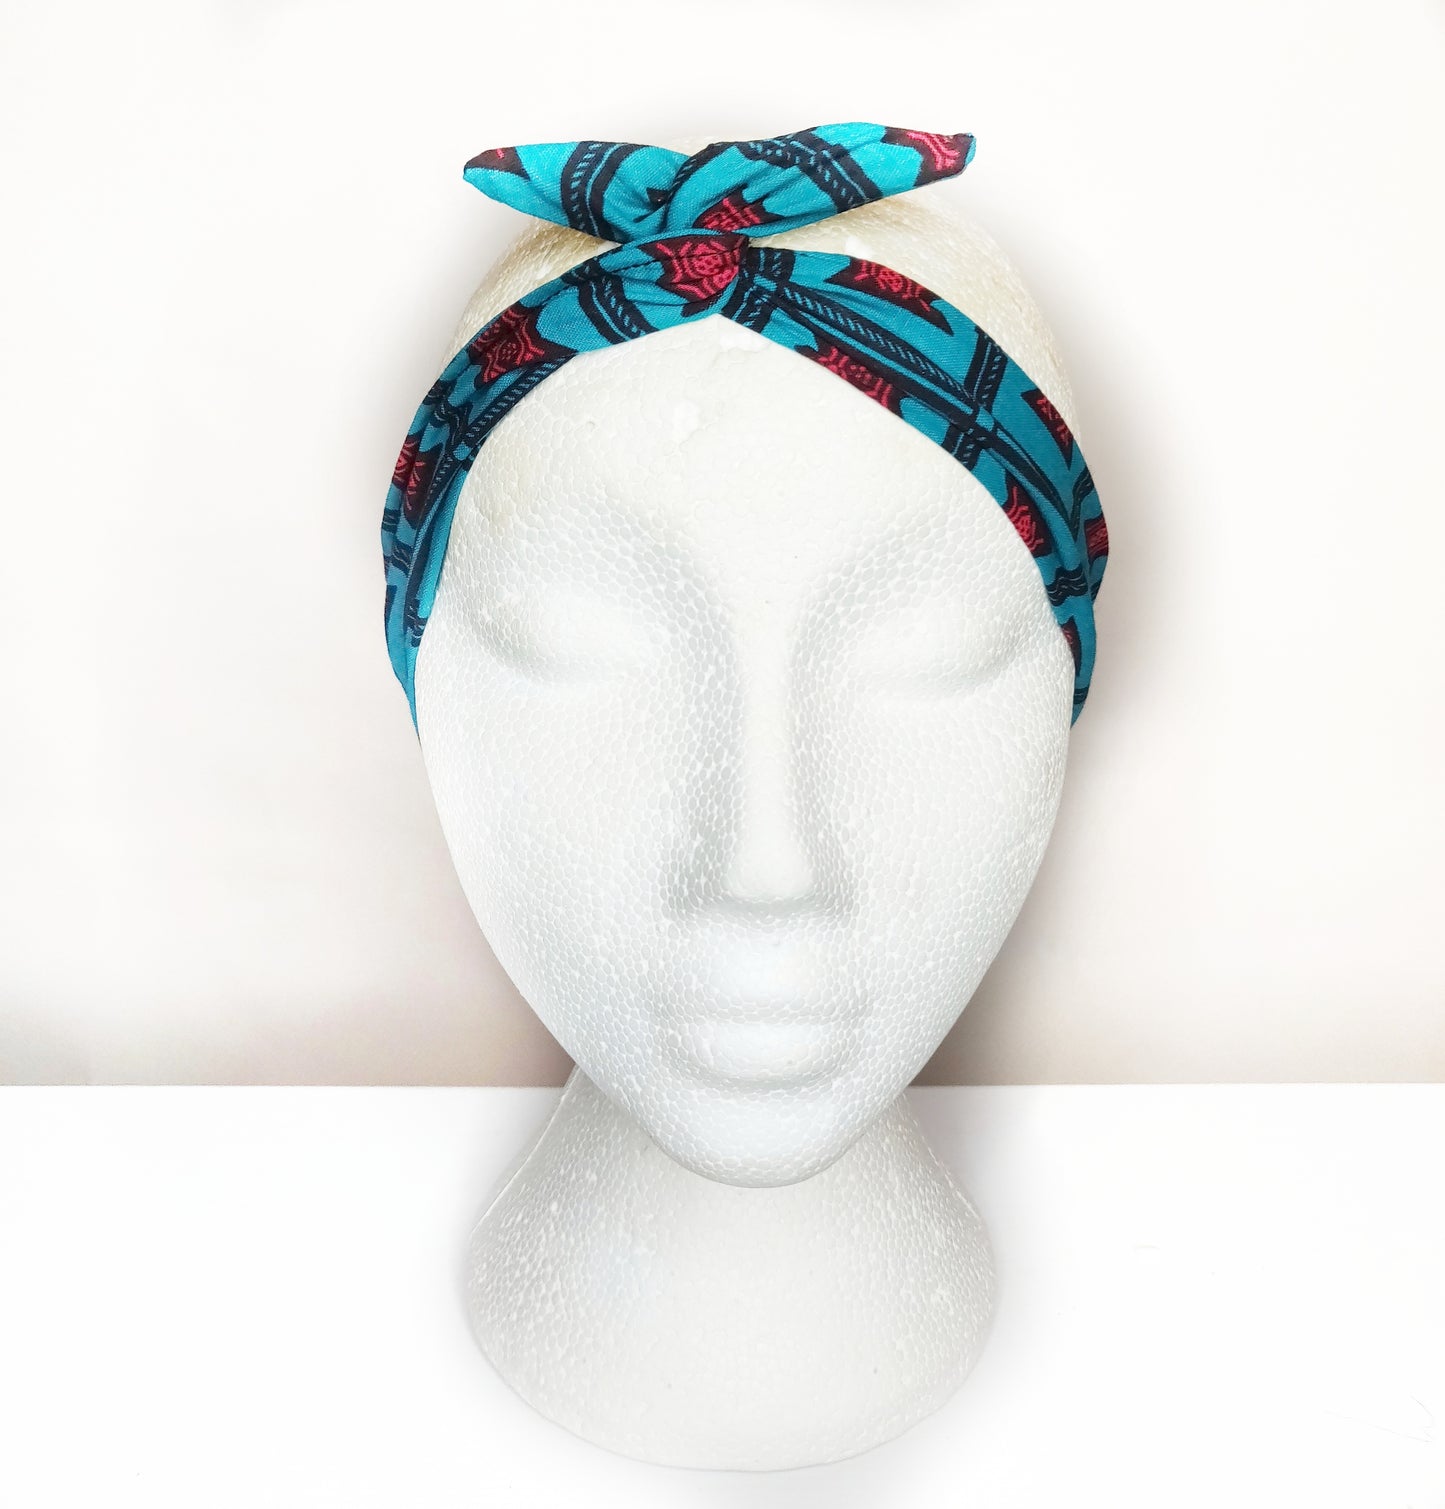 K A N I A - African Print Wired Headband